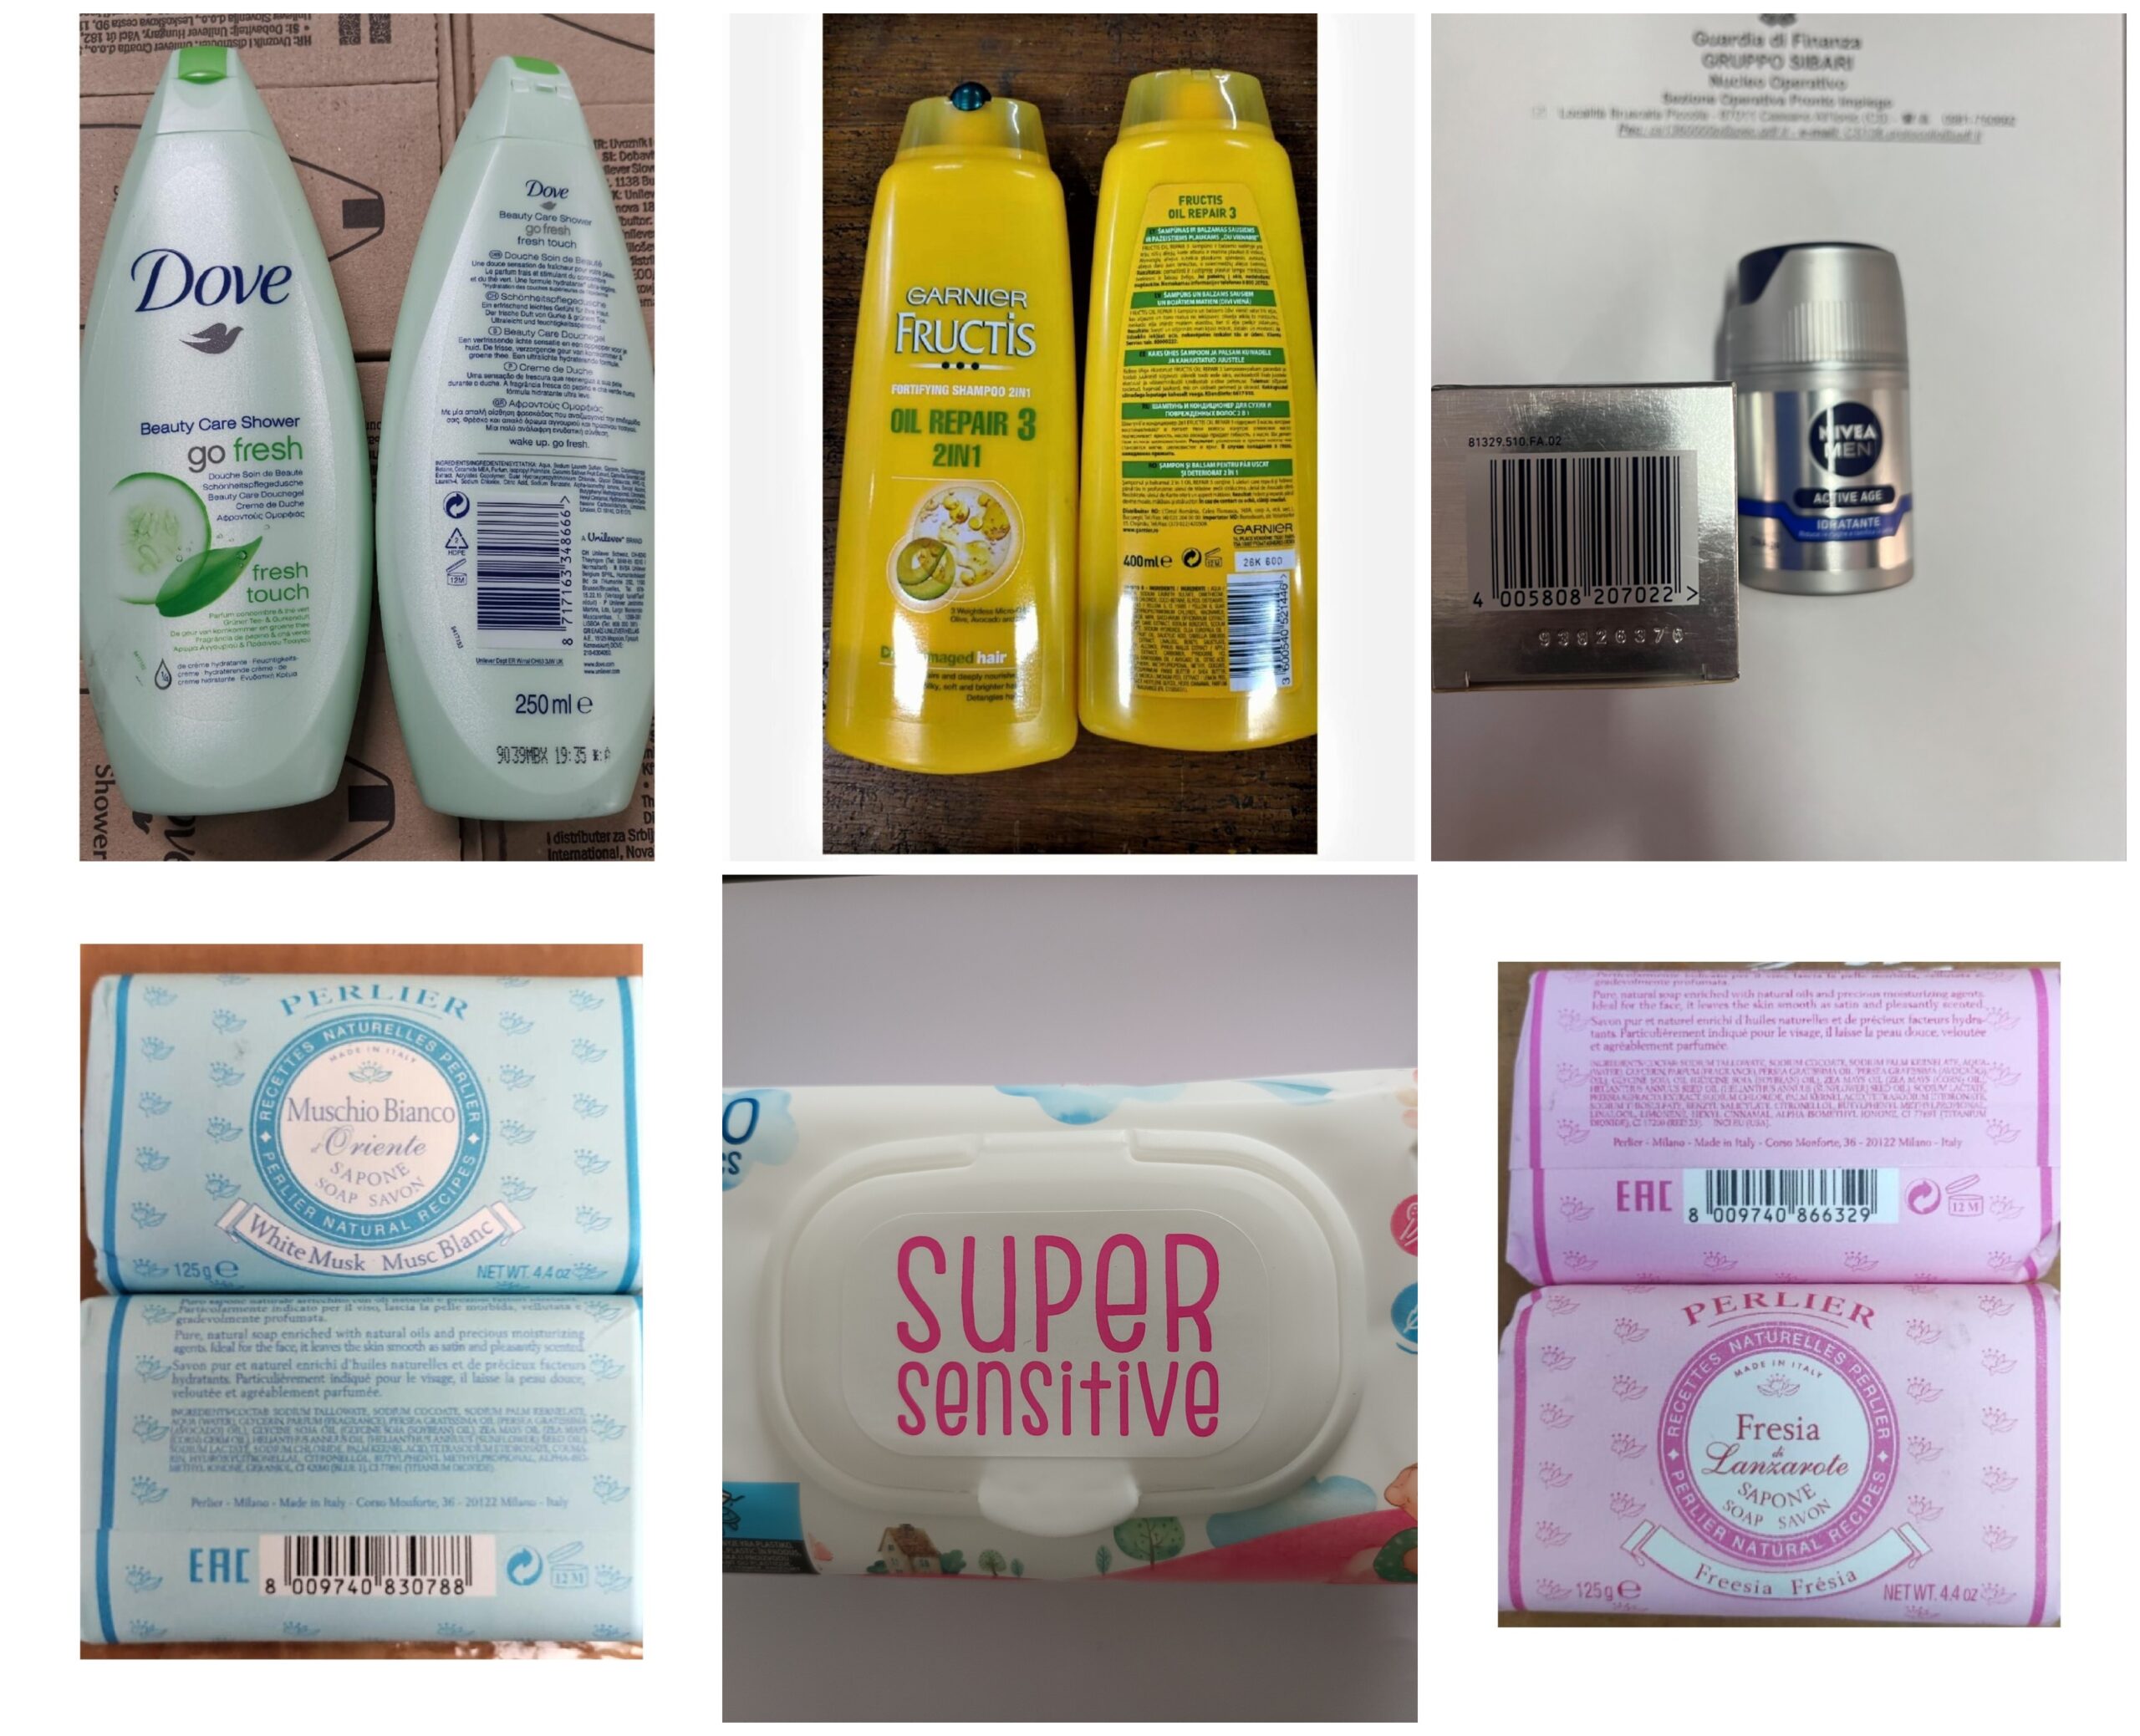 Attenzione: avvertenza per shampoo, gel doccia e altri cosmetici che contengono ingredienti pericolosi